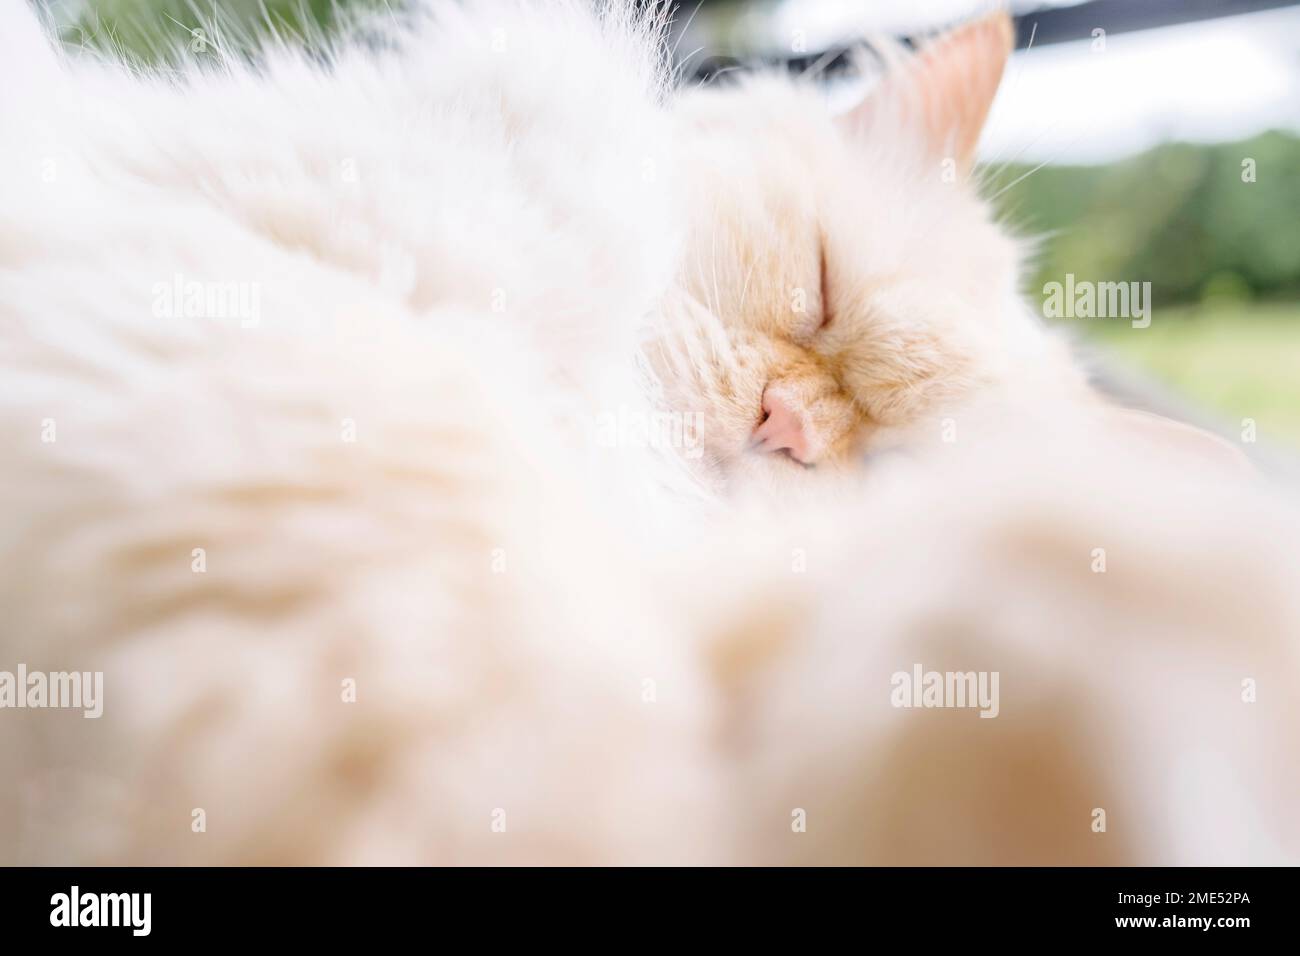 Gato persa con los ojos cerrados tomando siesta Foto de stock